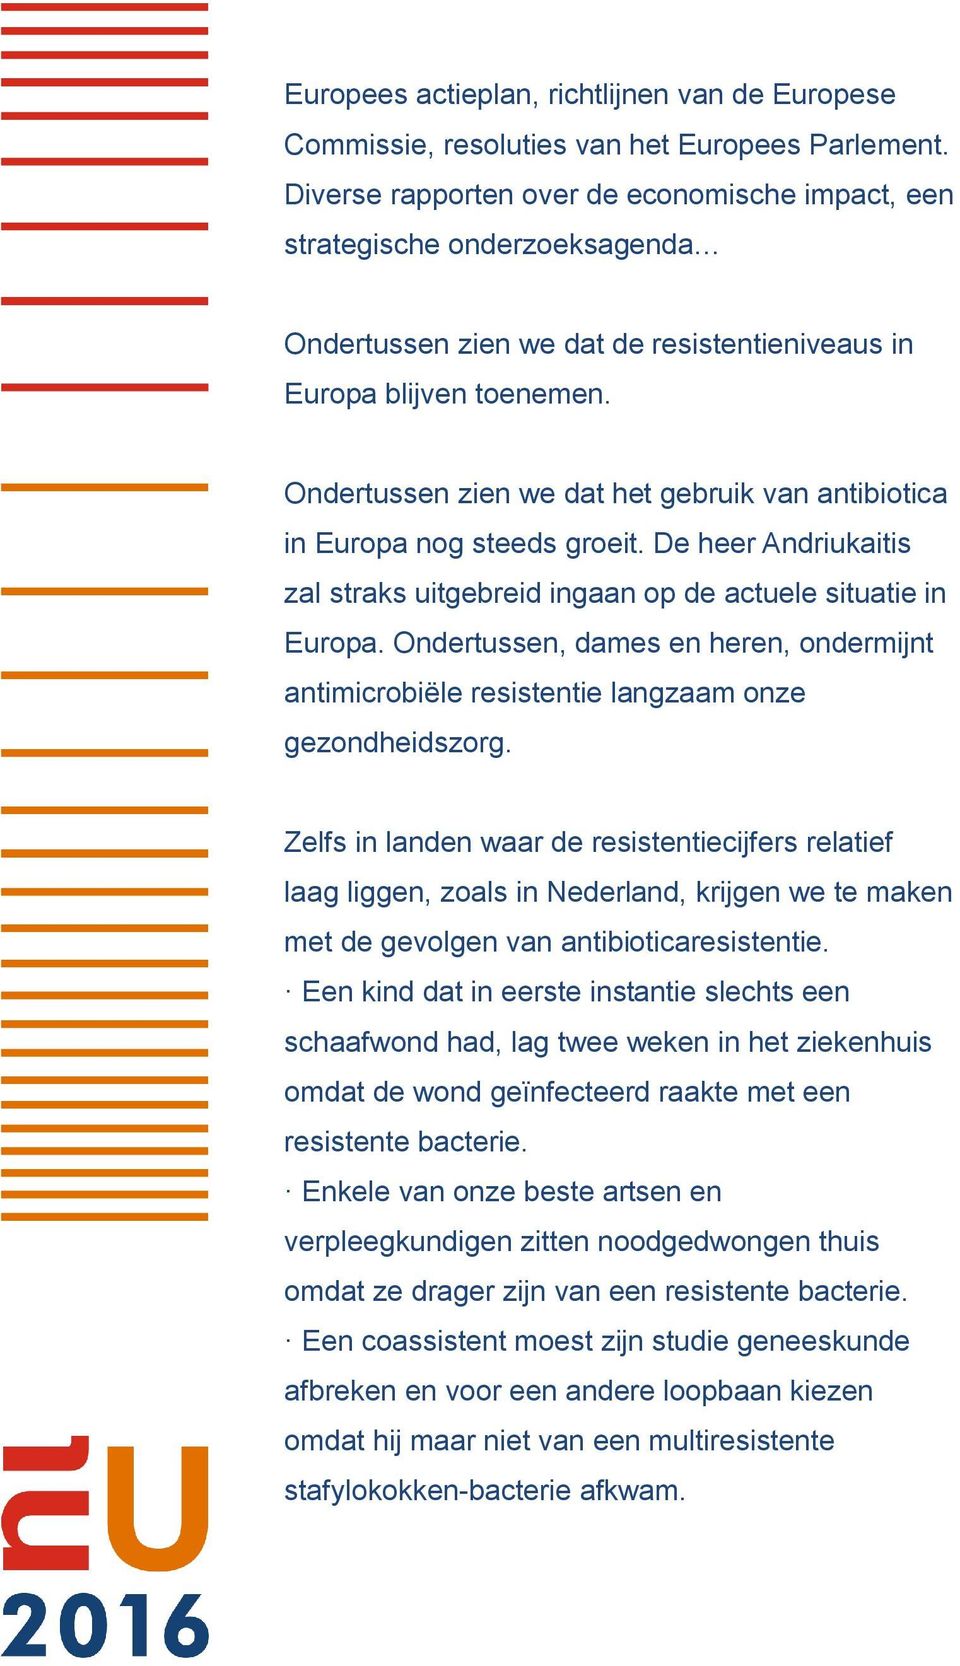 Ondertussen zien we dat het gebruik van antibiotica in Europa nog steeds groeit. De heer Andriukaitis zal straks uitgebreid ingaan op de actuele situatie in Europa.